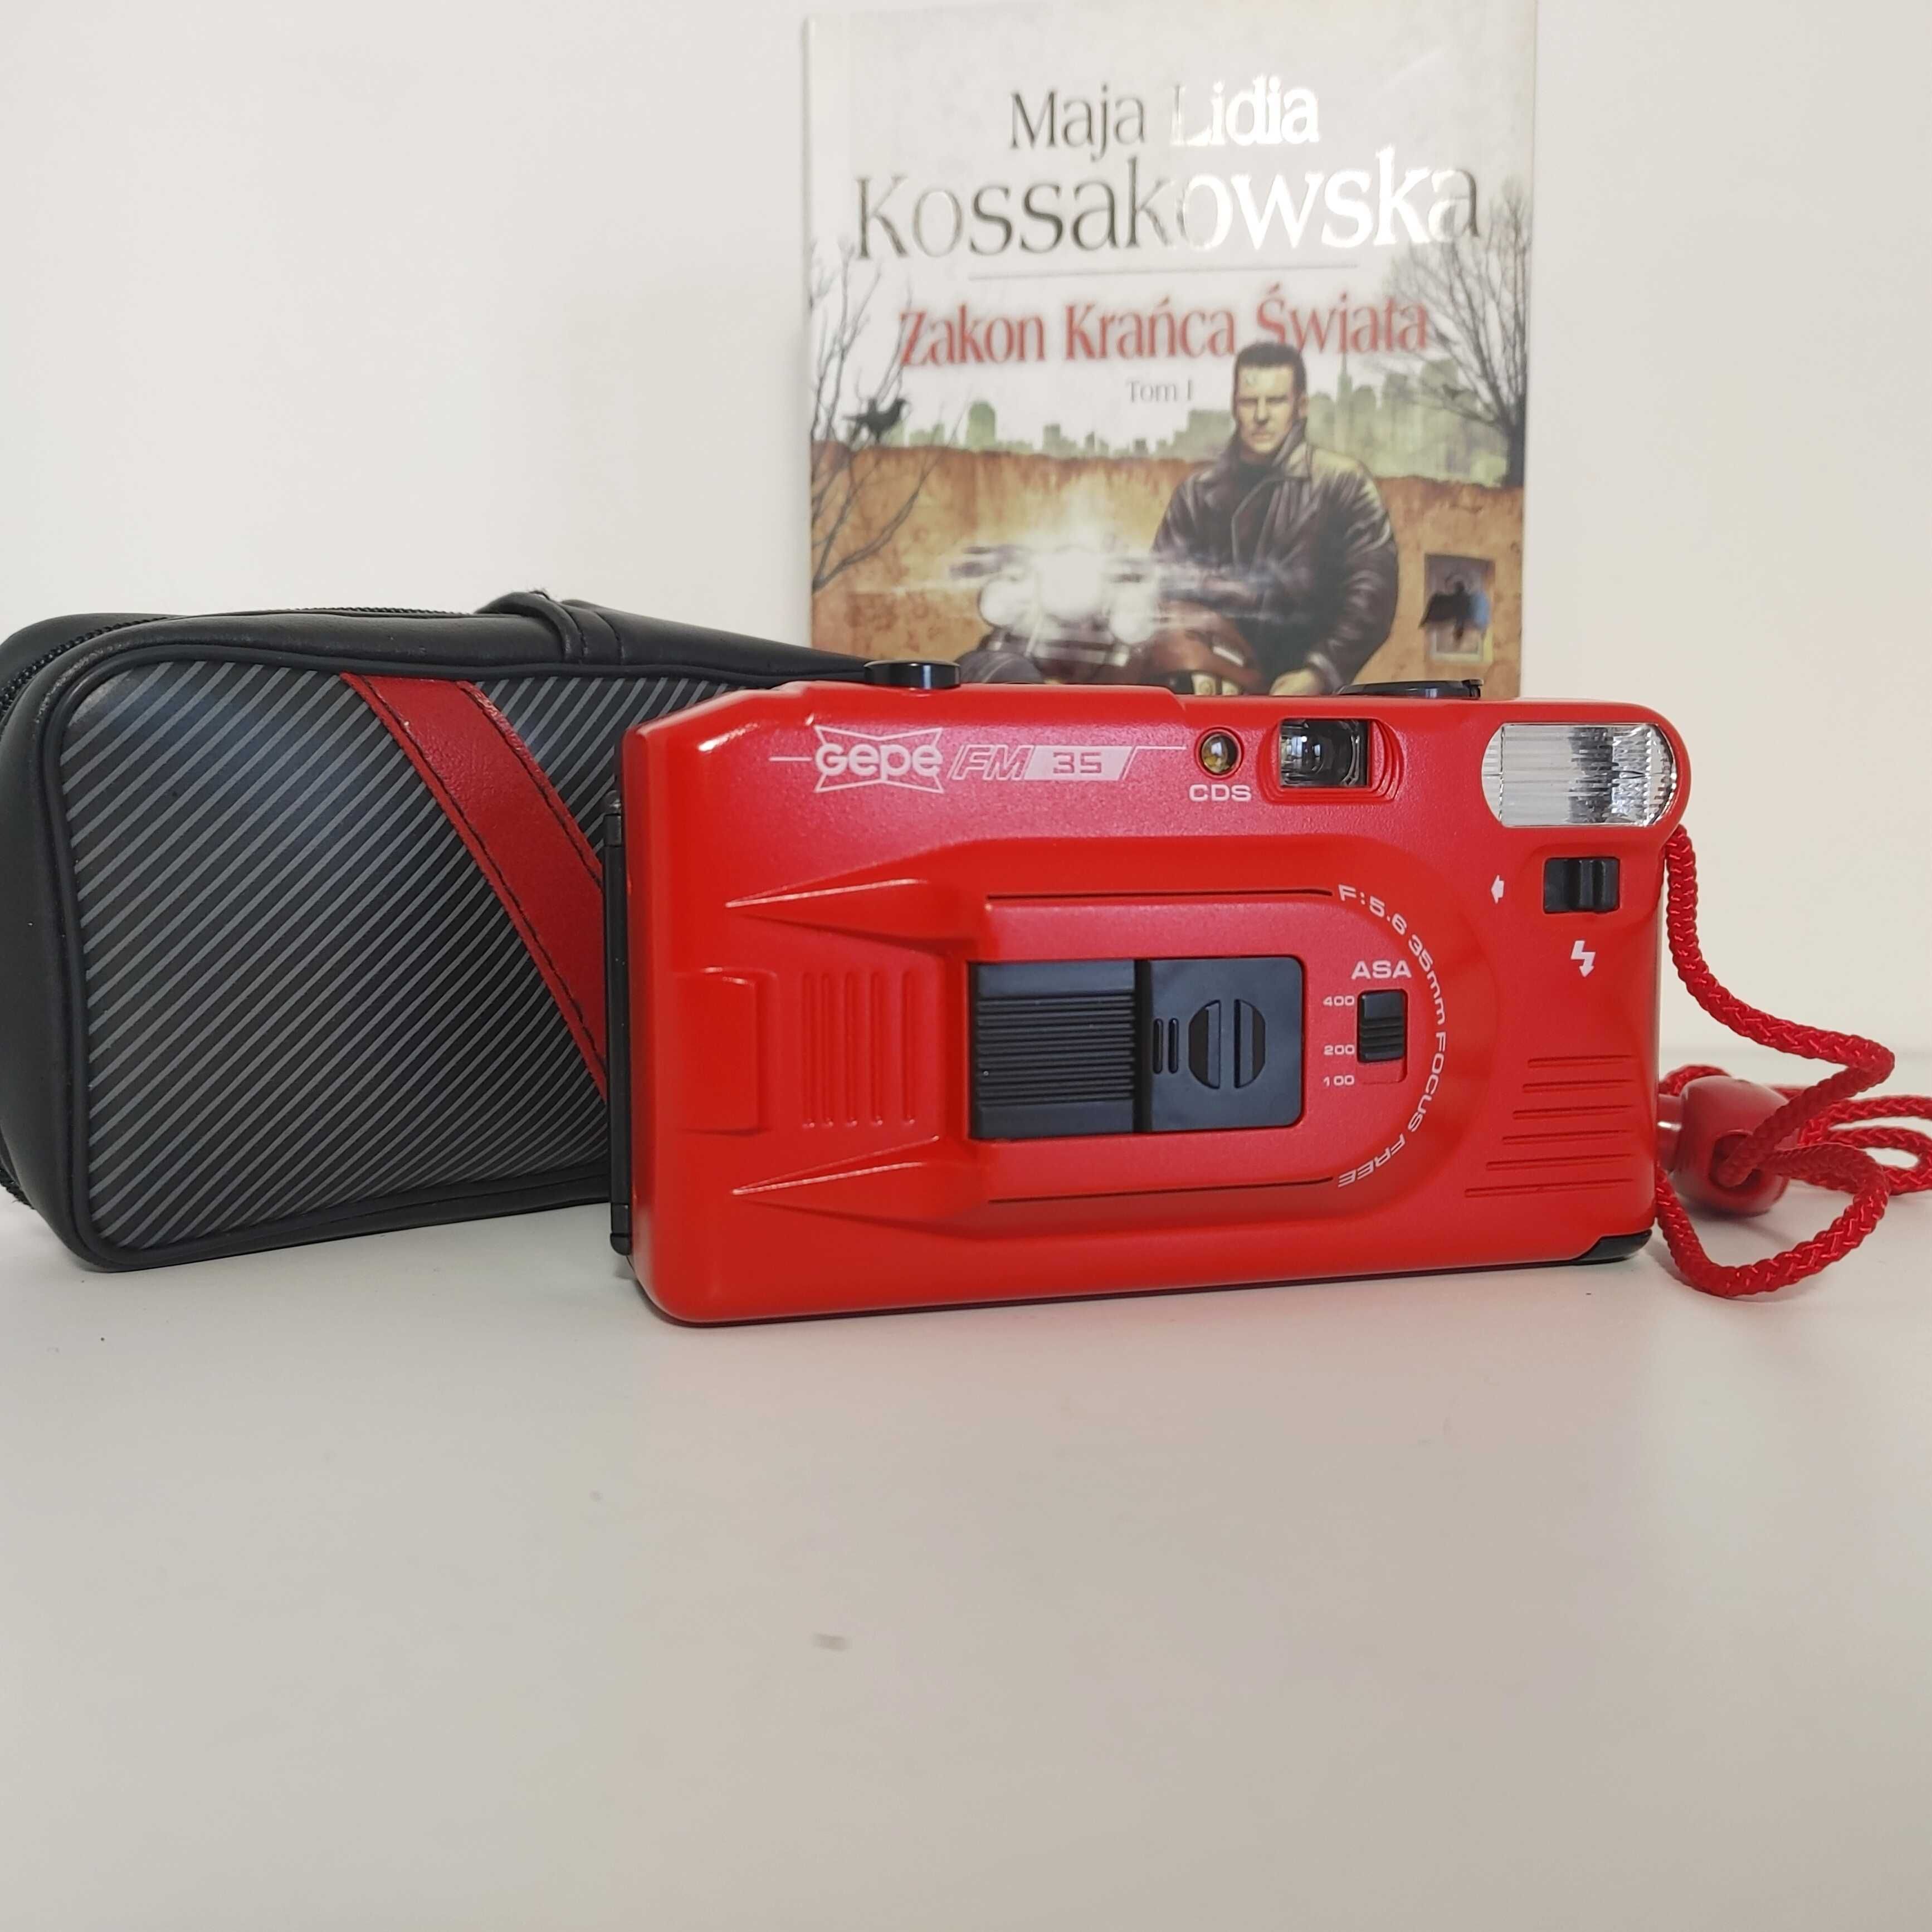 Angielski analogowy fotograficzny aparat kompaktowy GEPE FM35 1987 rok